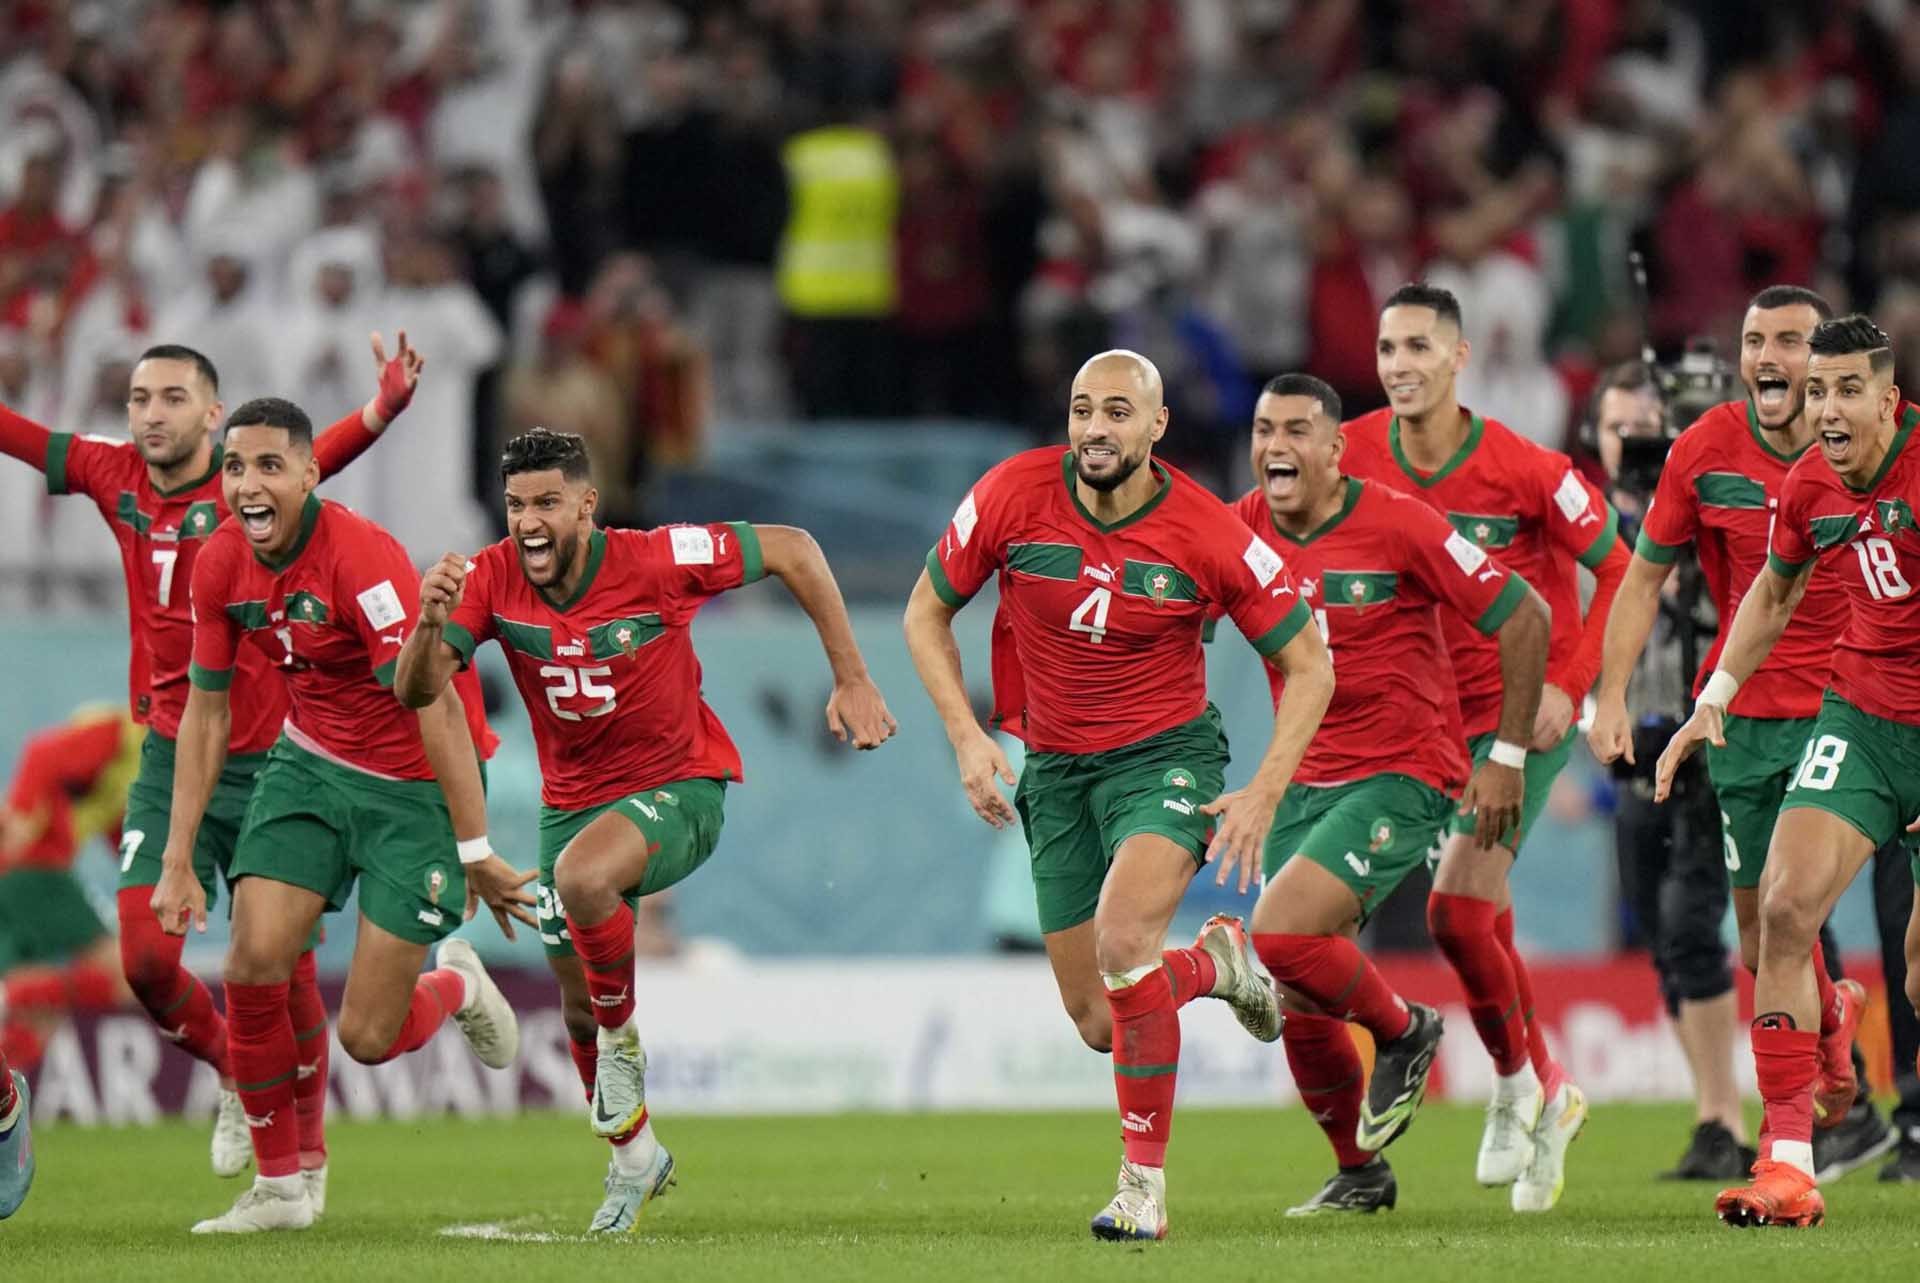 Đội tuyển Morocco được ví như “cơn đại địa chấn” tại World Cup 2022 